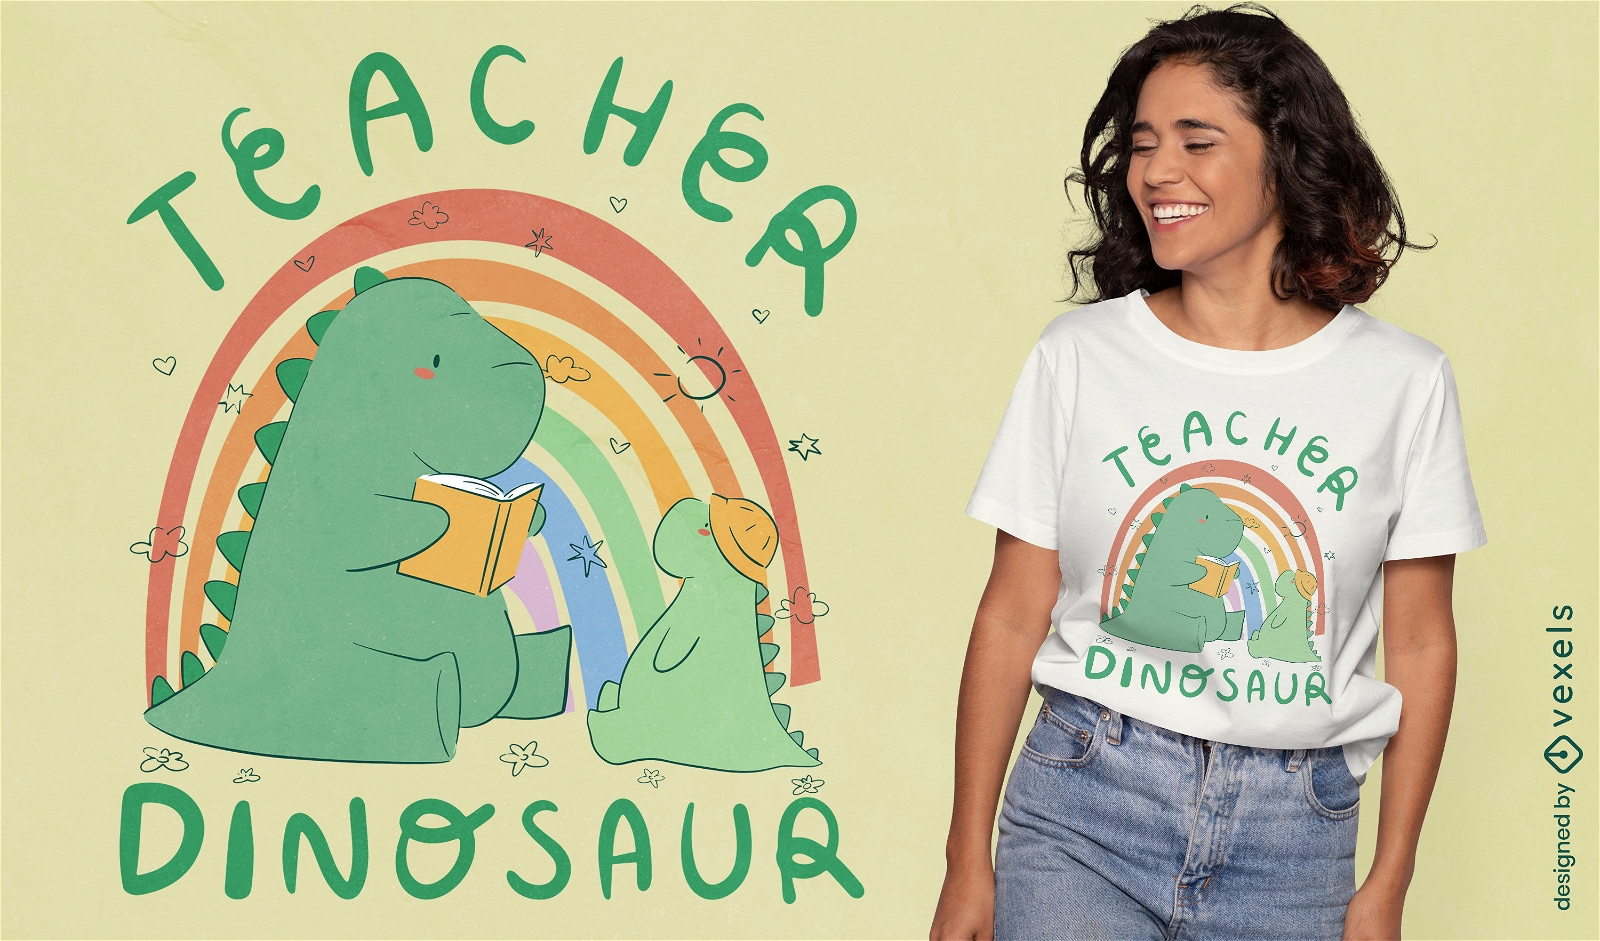 Dise?o de camiseta de profesor de dinosaurio.